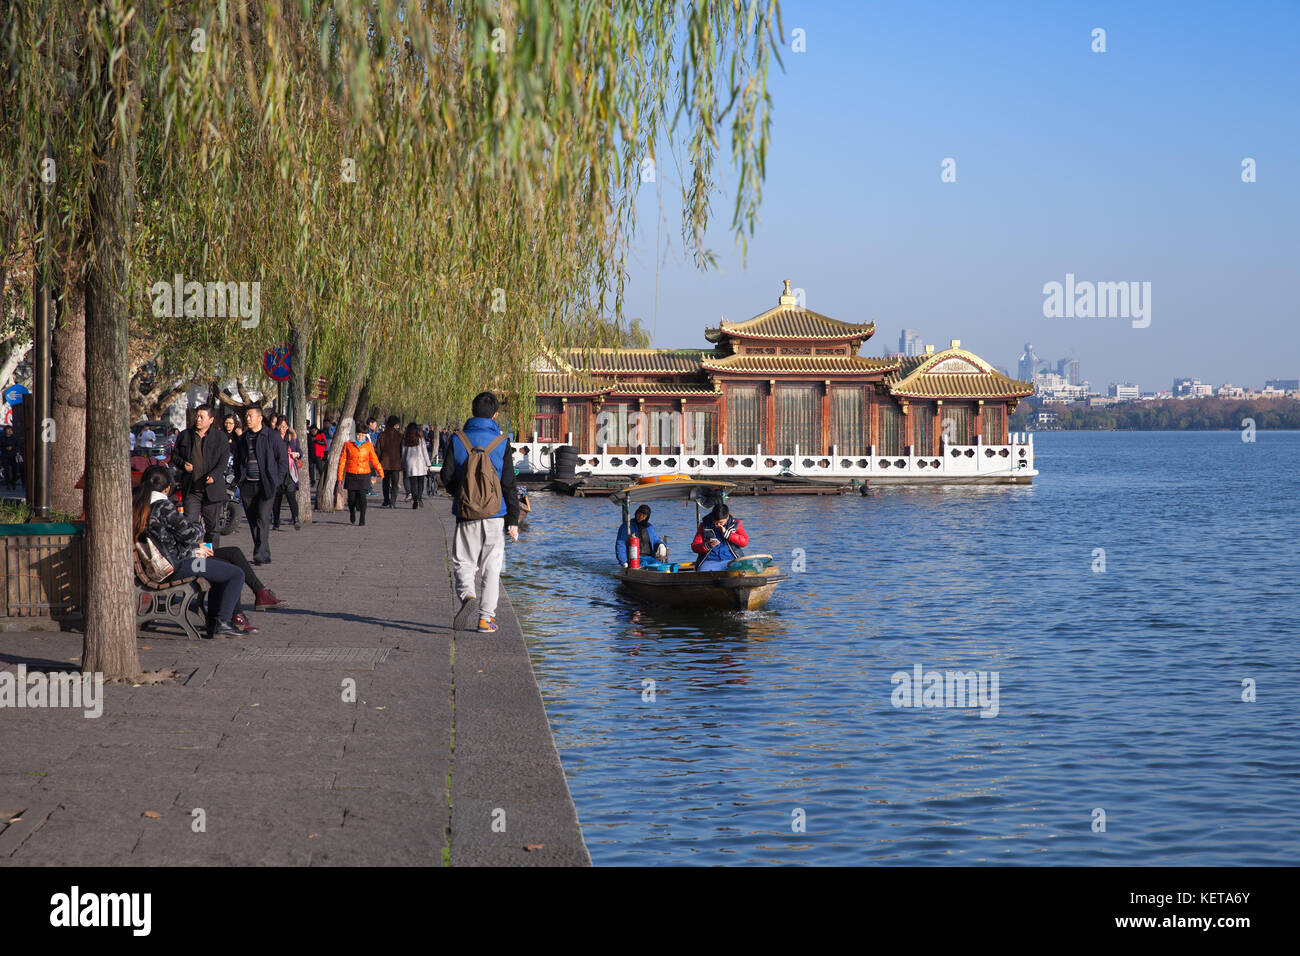 Hangzhou, Cina - 5 dicembre 2014: galleggiante cinesi in legno gazebo. West Lake, popolare parco di Hangzhou city centre, Cina. la gente comune a piedi su th Foto Stock